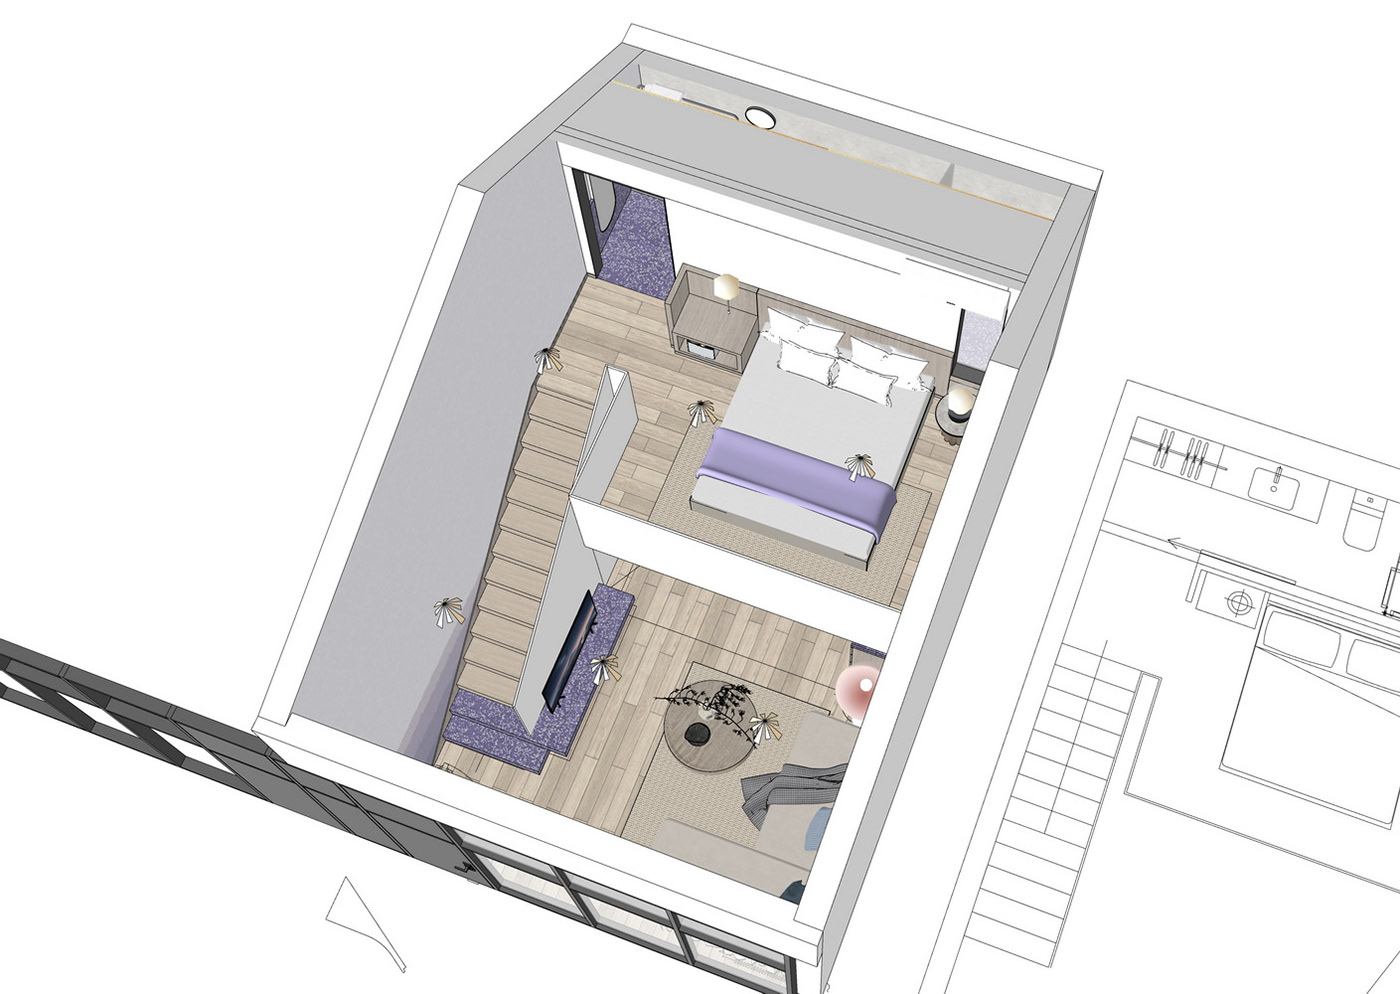 单身公寓 卧室 复式公寓 室内设计 家居设计 家装设计